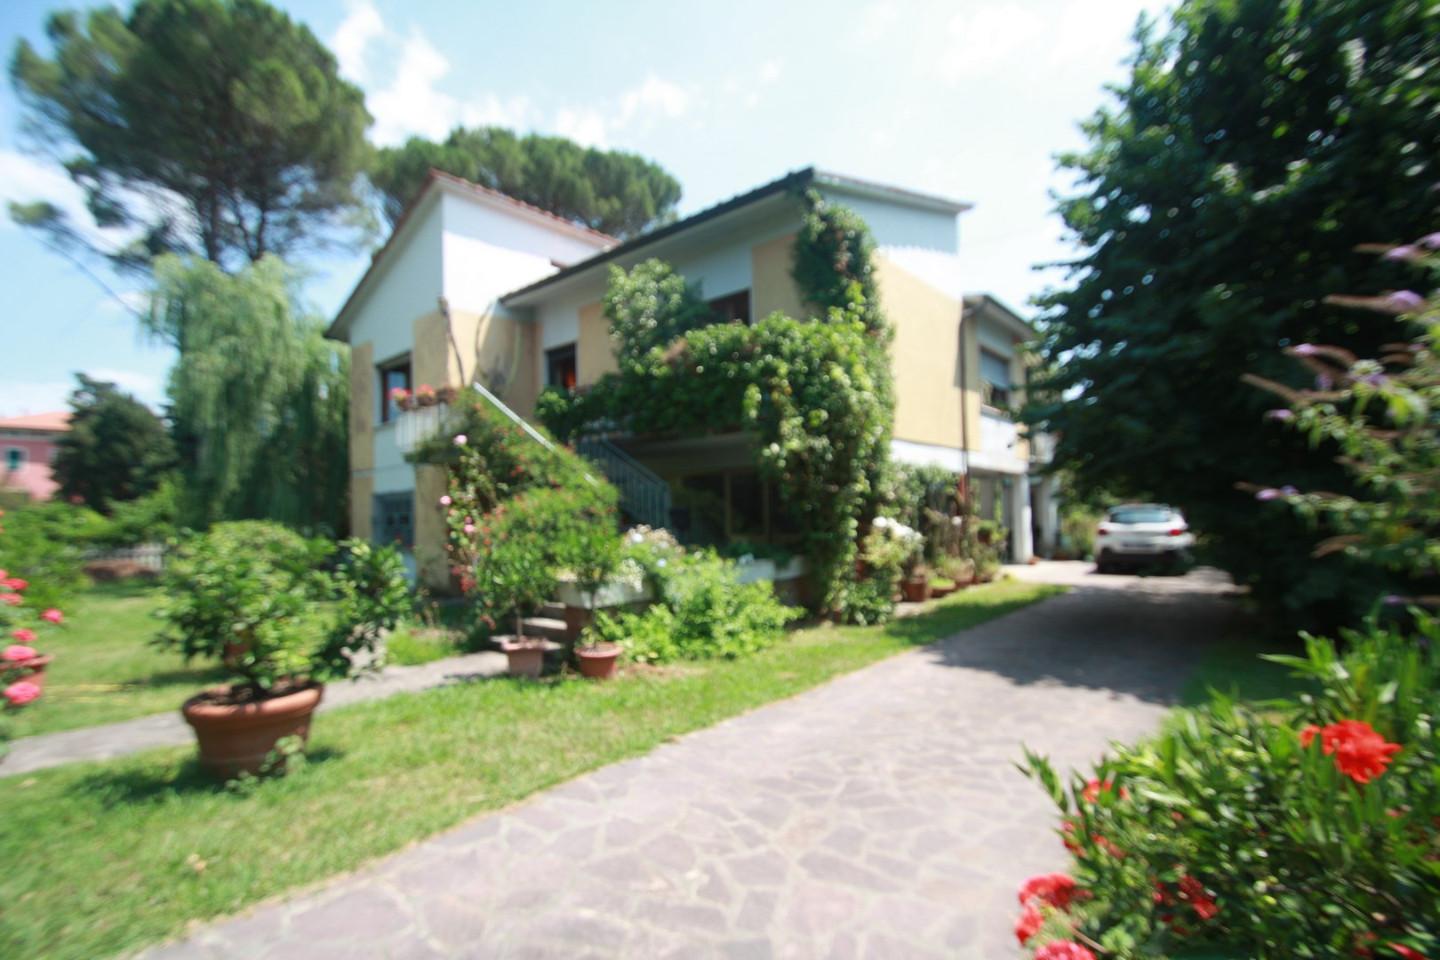 Villa in vendita, Lucca san pietro a vico